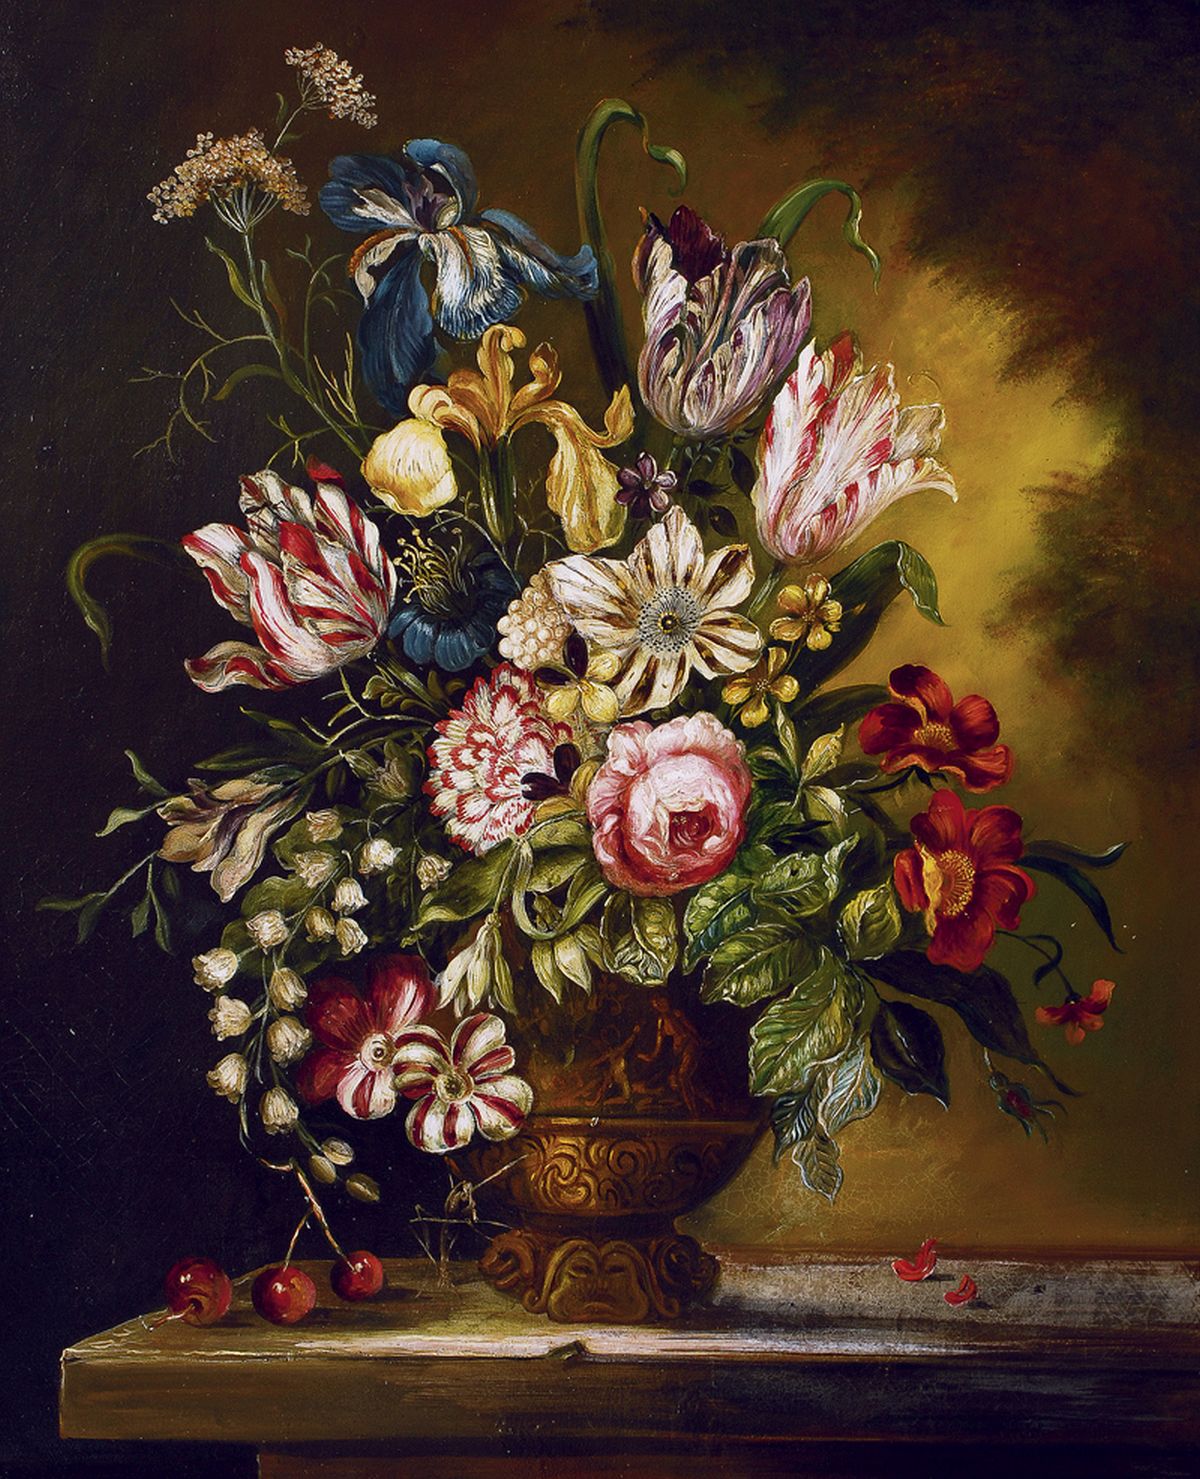 A large flower bouquet